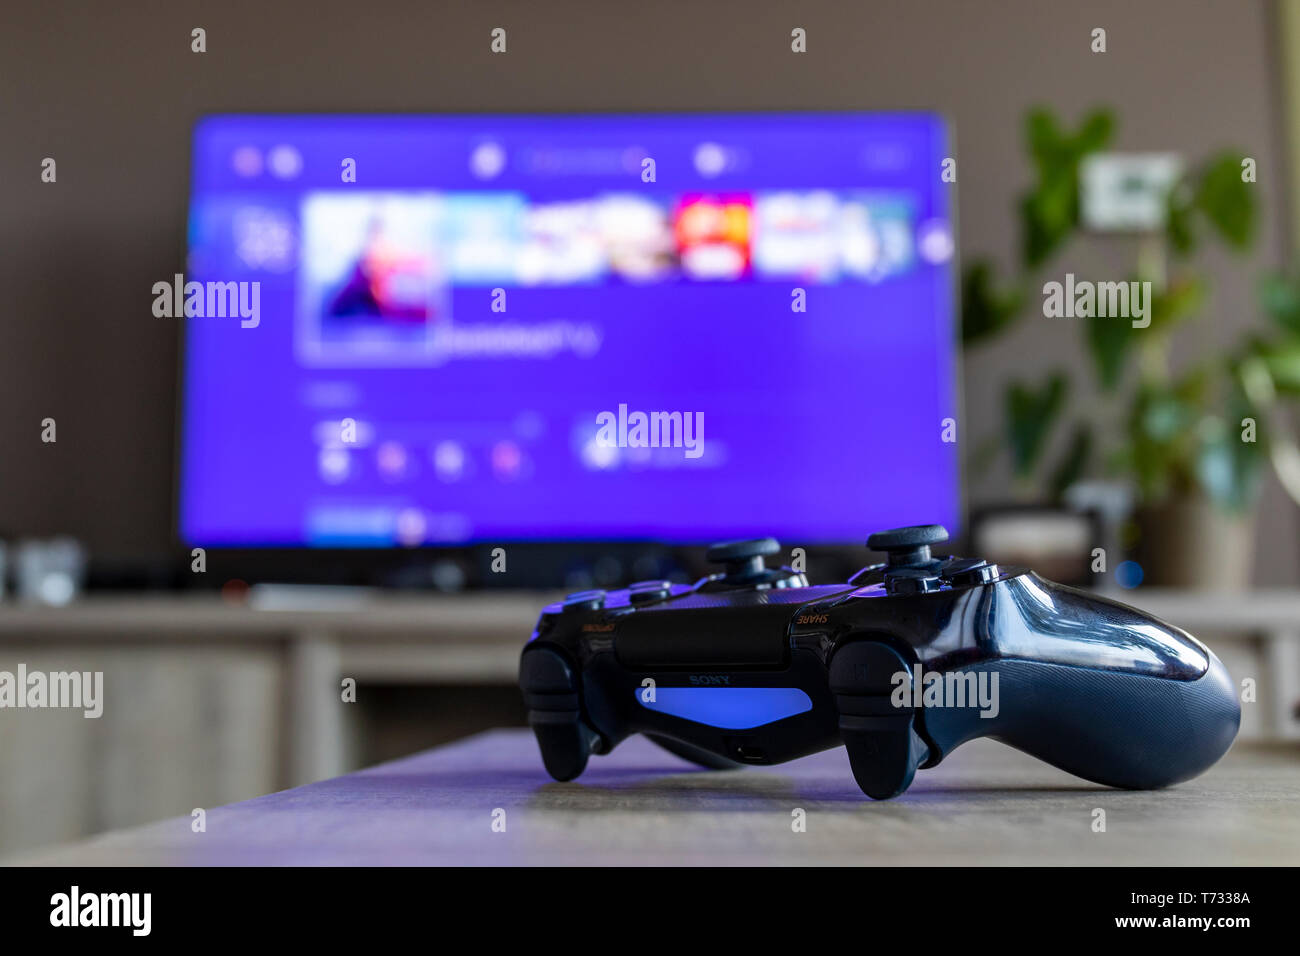 Un retrato de un controlador de PS4, que está encendida, delante de un televisor. La televisión es borrosa y muestra la pantalla de playstation home. Foto de stock